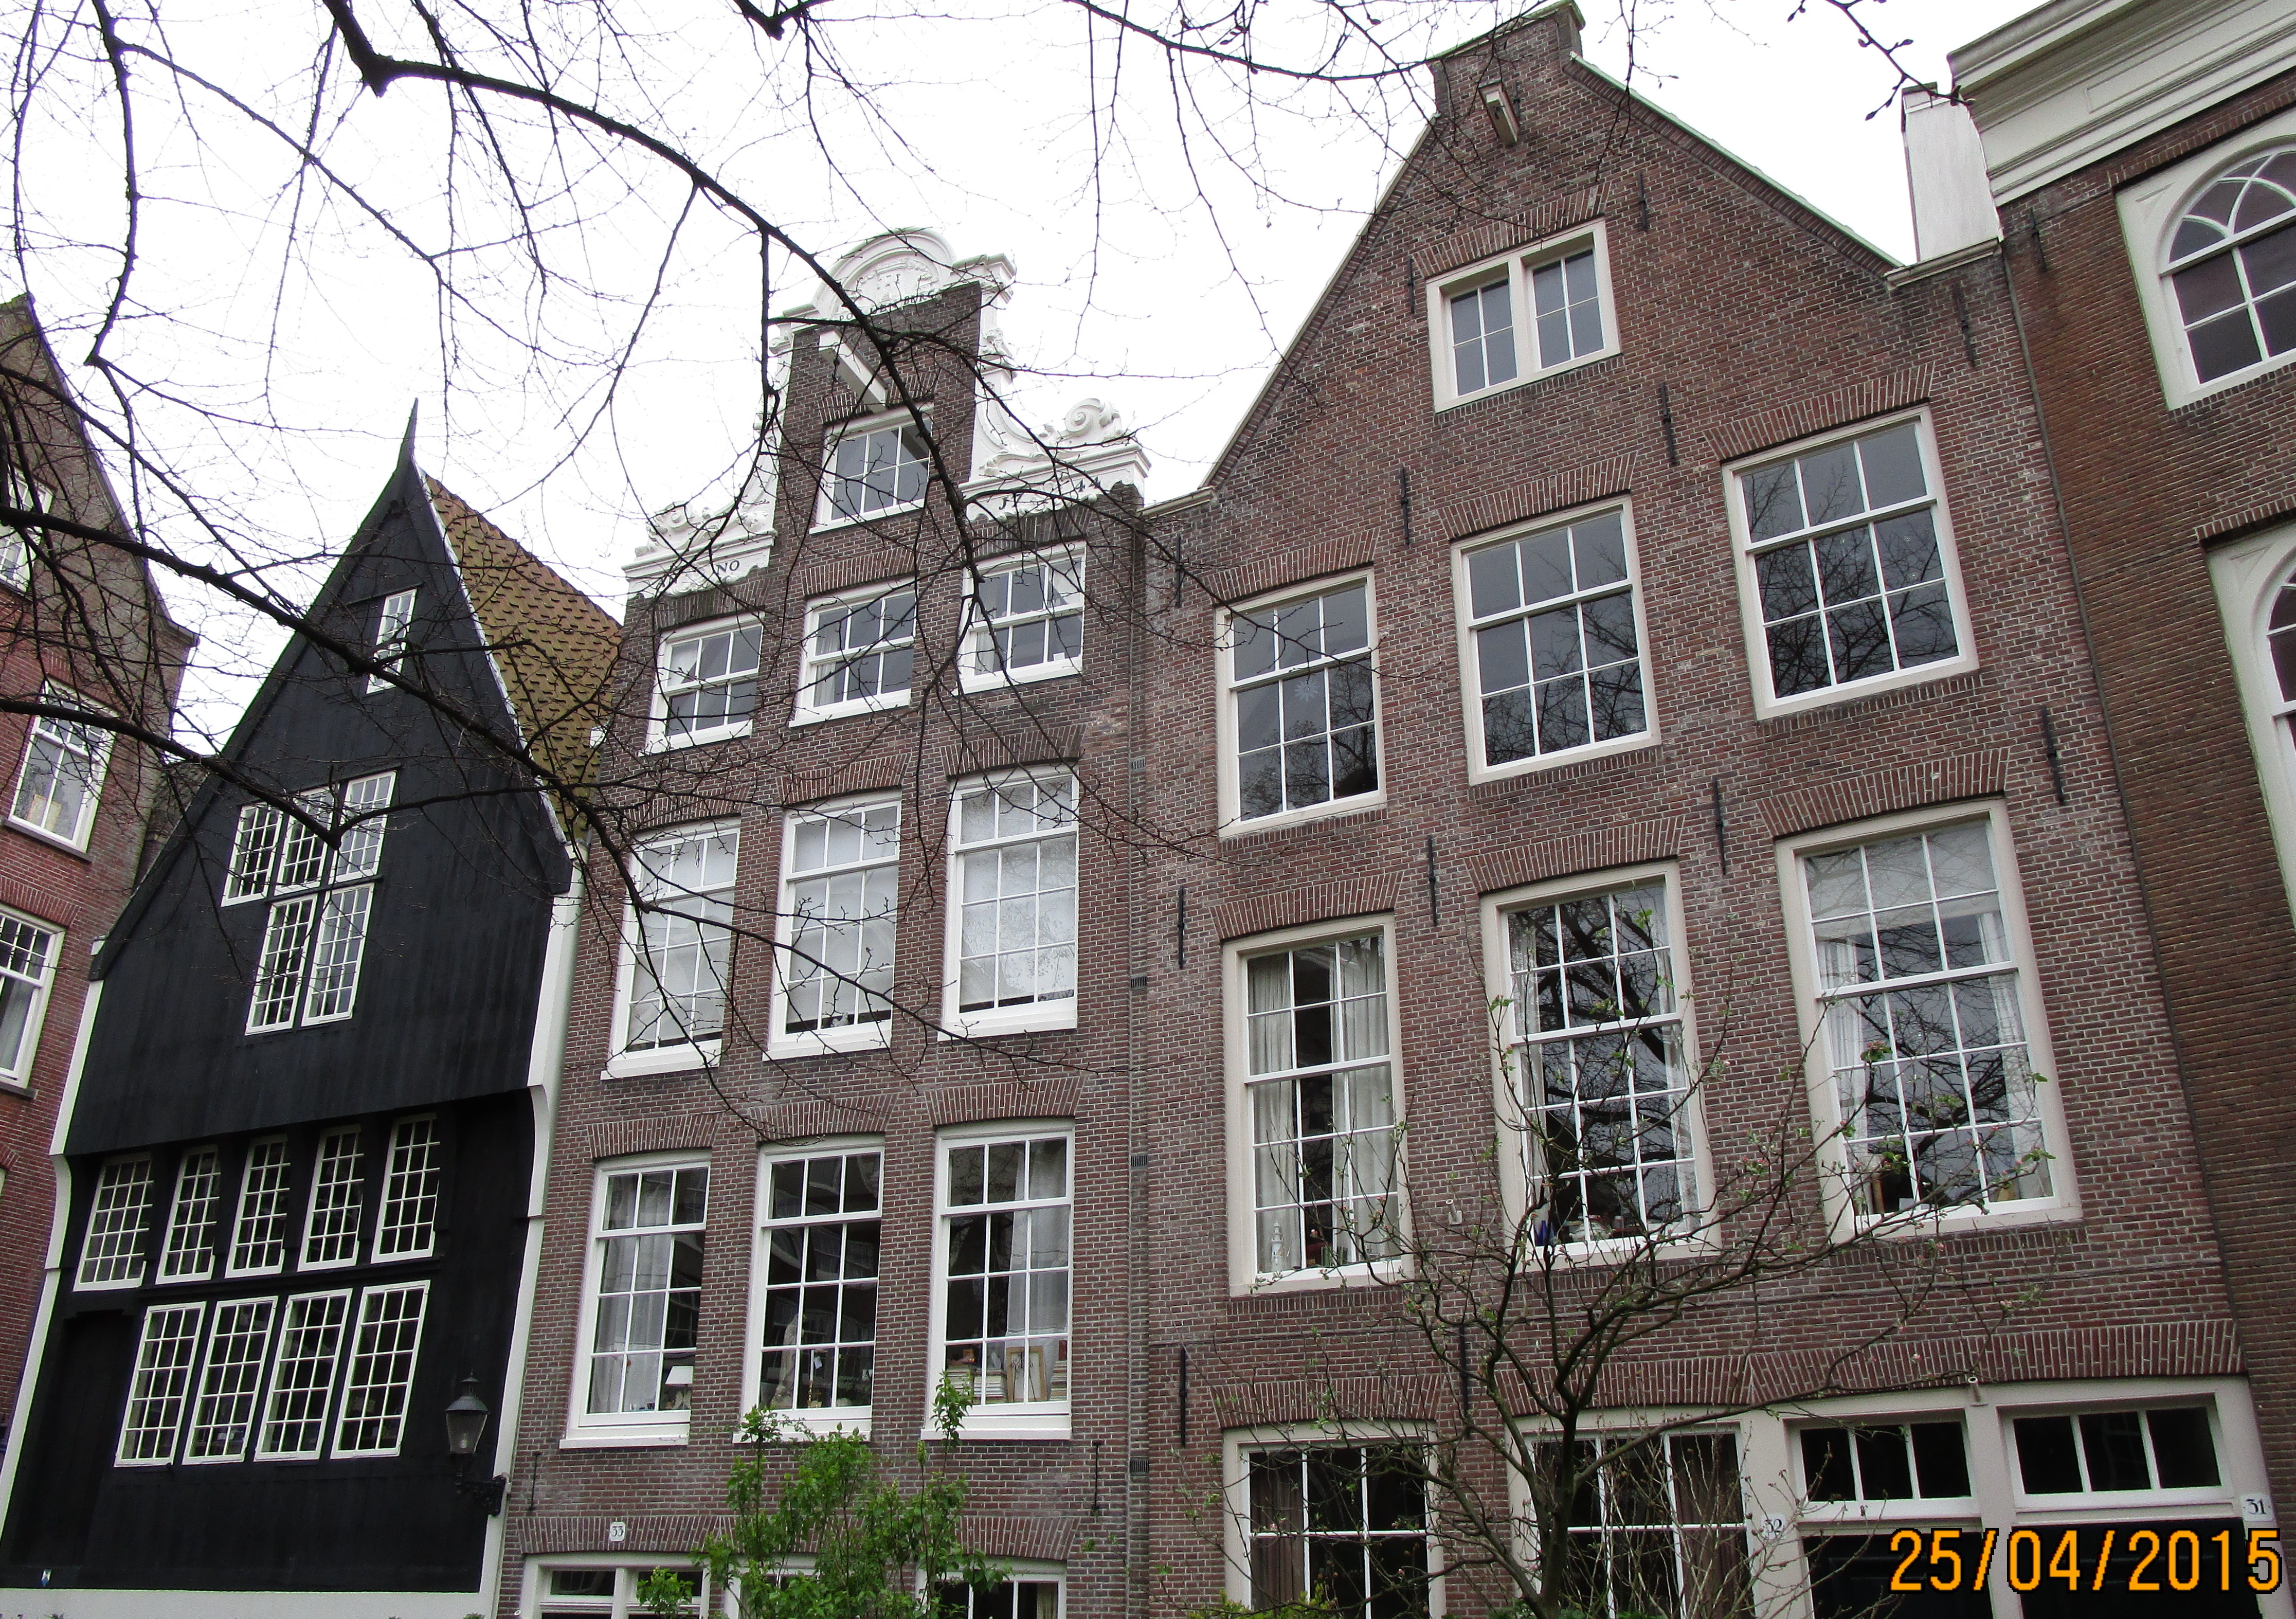 Prochzka Amsterdamem XXII. - vlevo dajn nejstar amsterdamsk dm